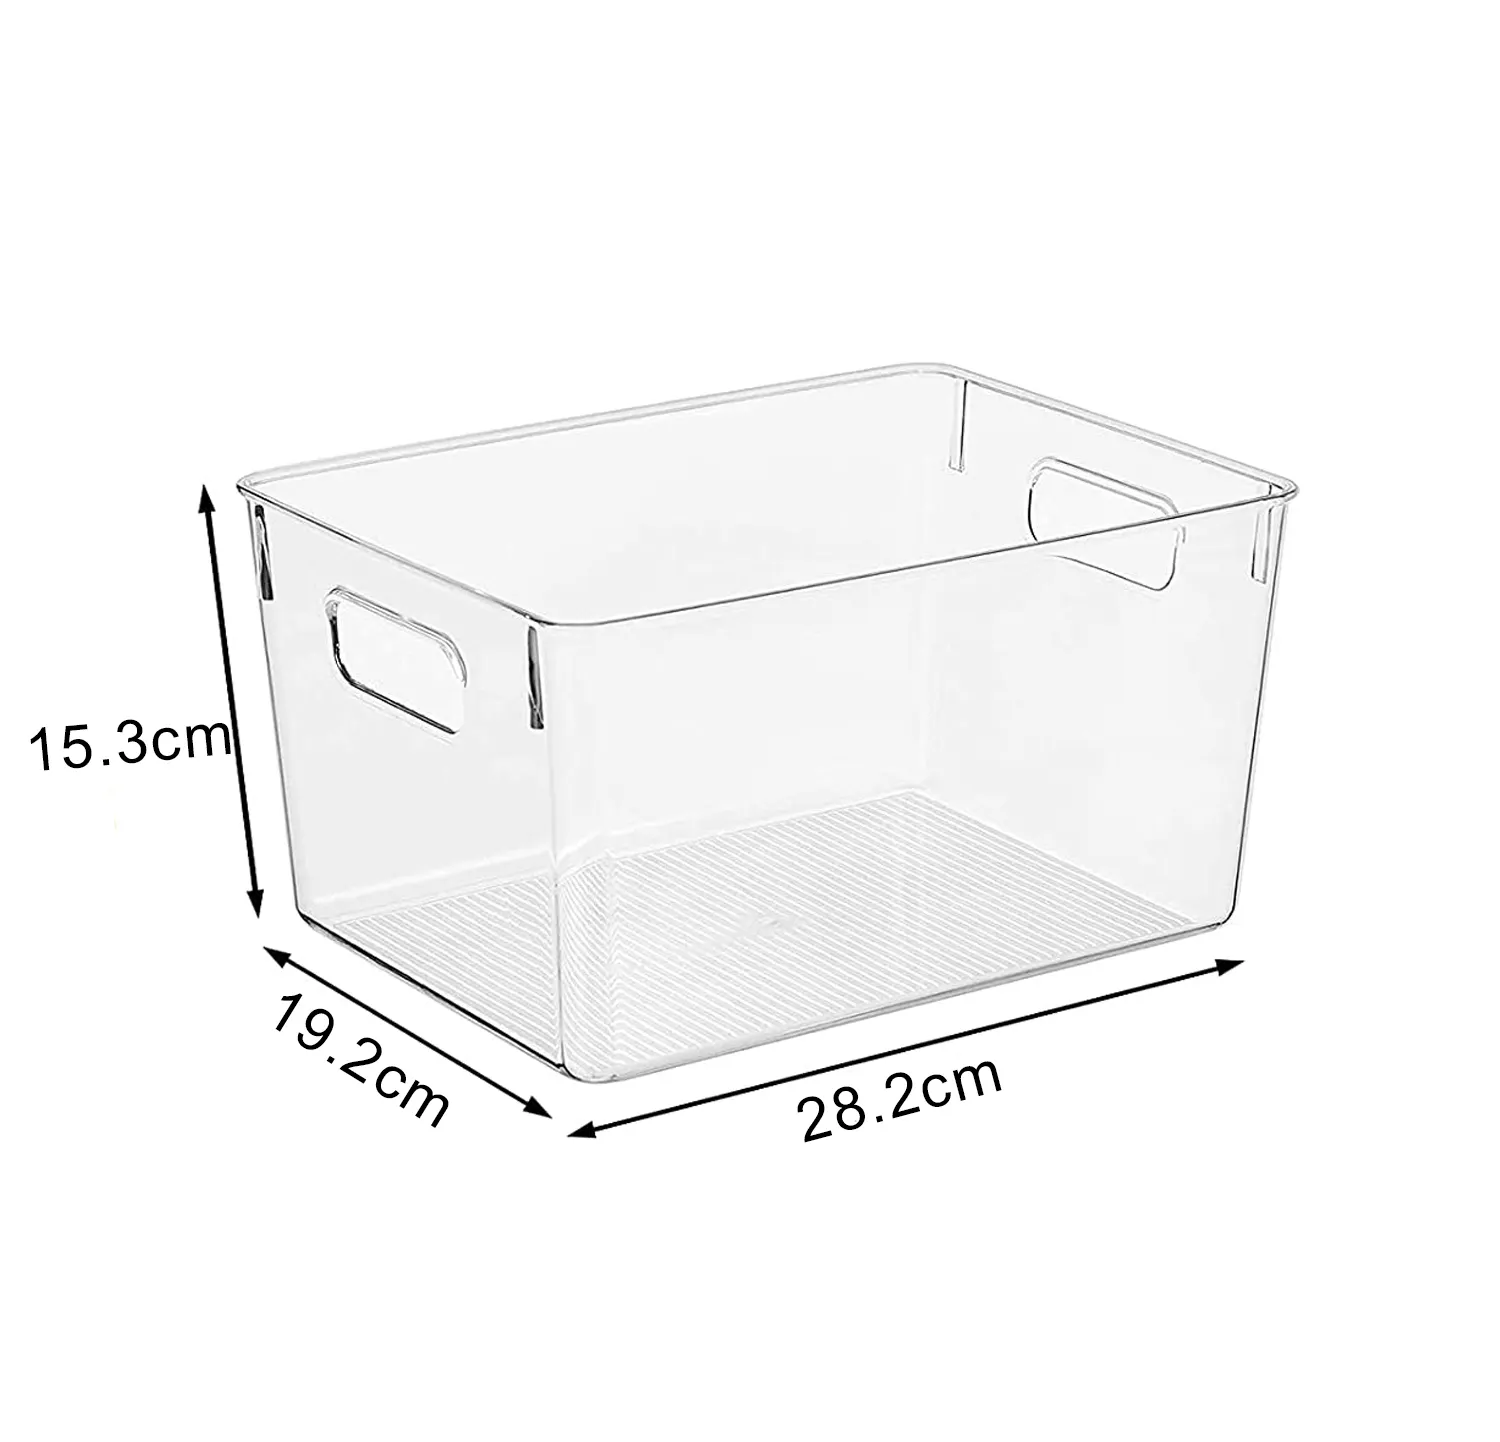 Choice Fun пластиковые контейнеры для хранения Кухня Кладовая бирдкагес Шкаф Организатор ящик холодильник ящики для хранения куб ящики для хранения